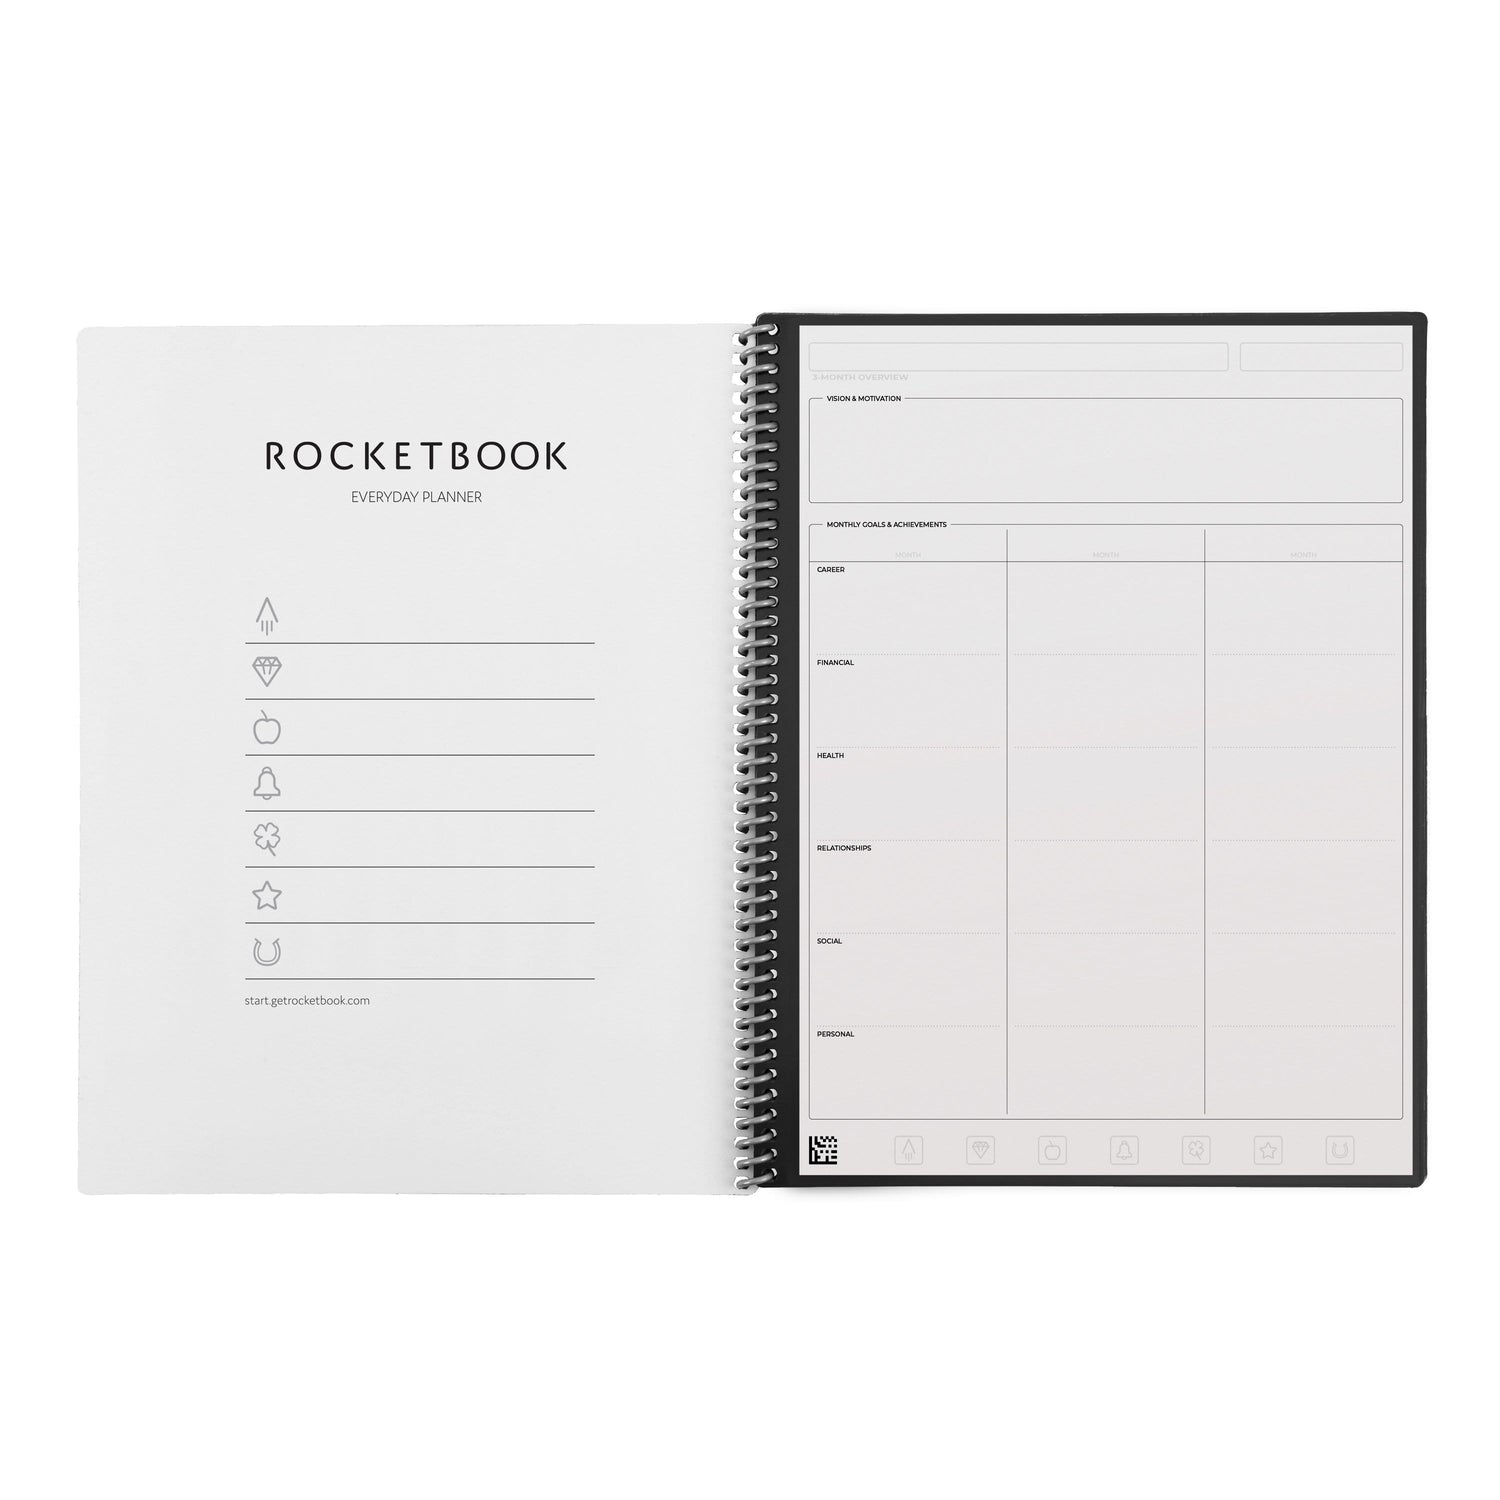 Smart Notebook | The Original Reusable Notebook